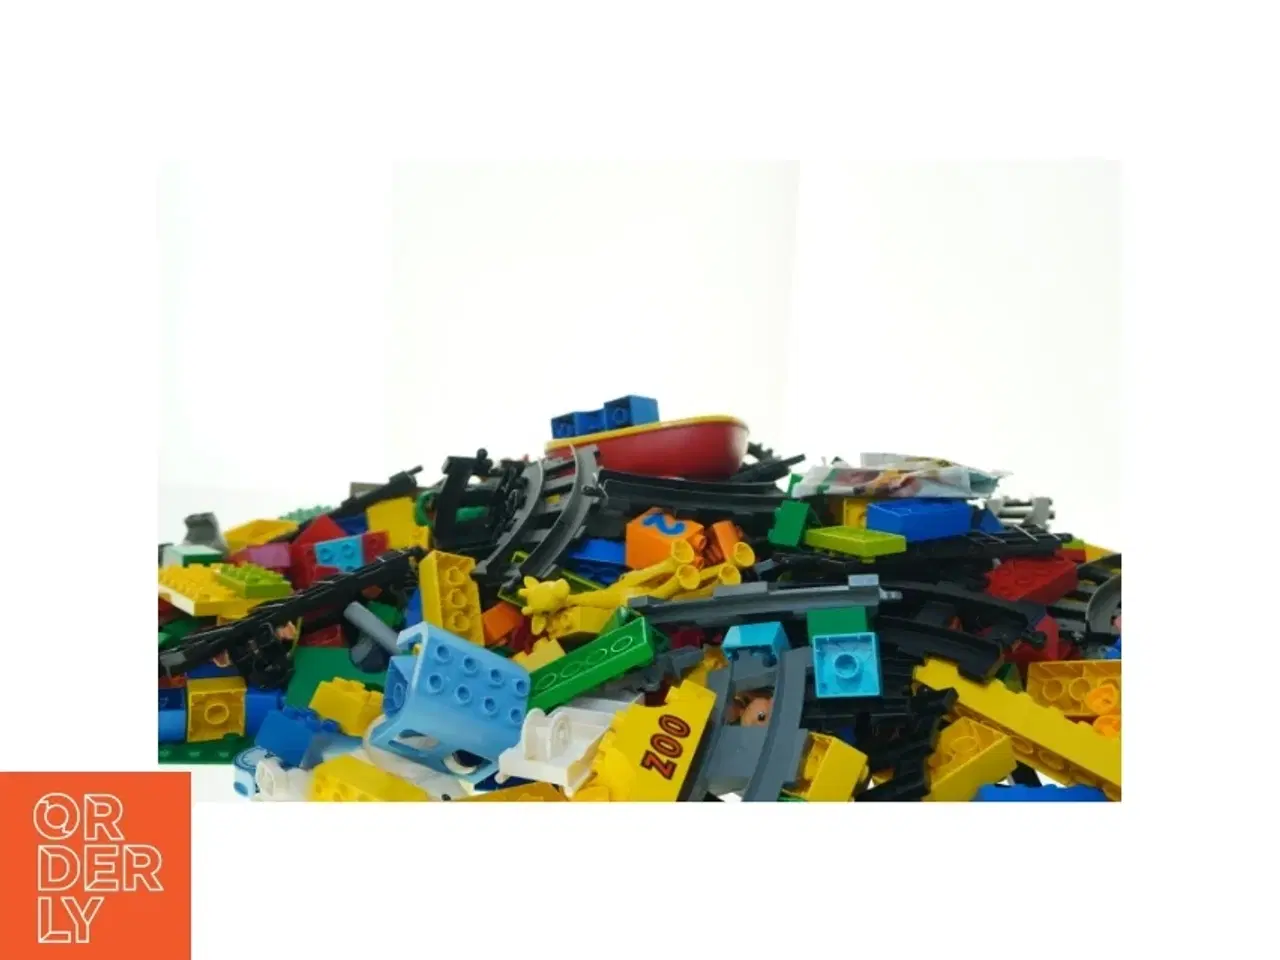 Billede 4 - Blandede LEGO klodser fra Lego (str. 58 x 40 cm)